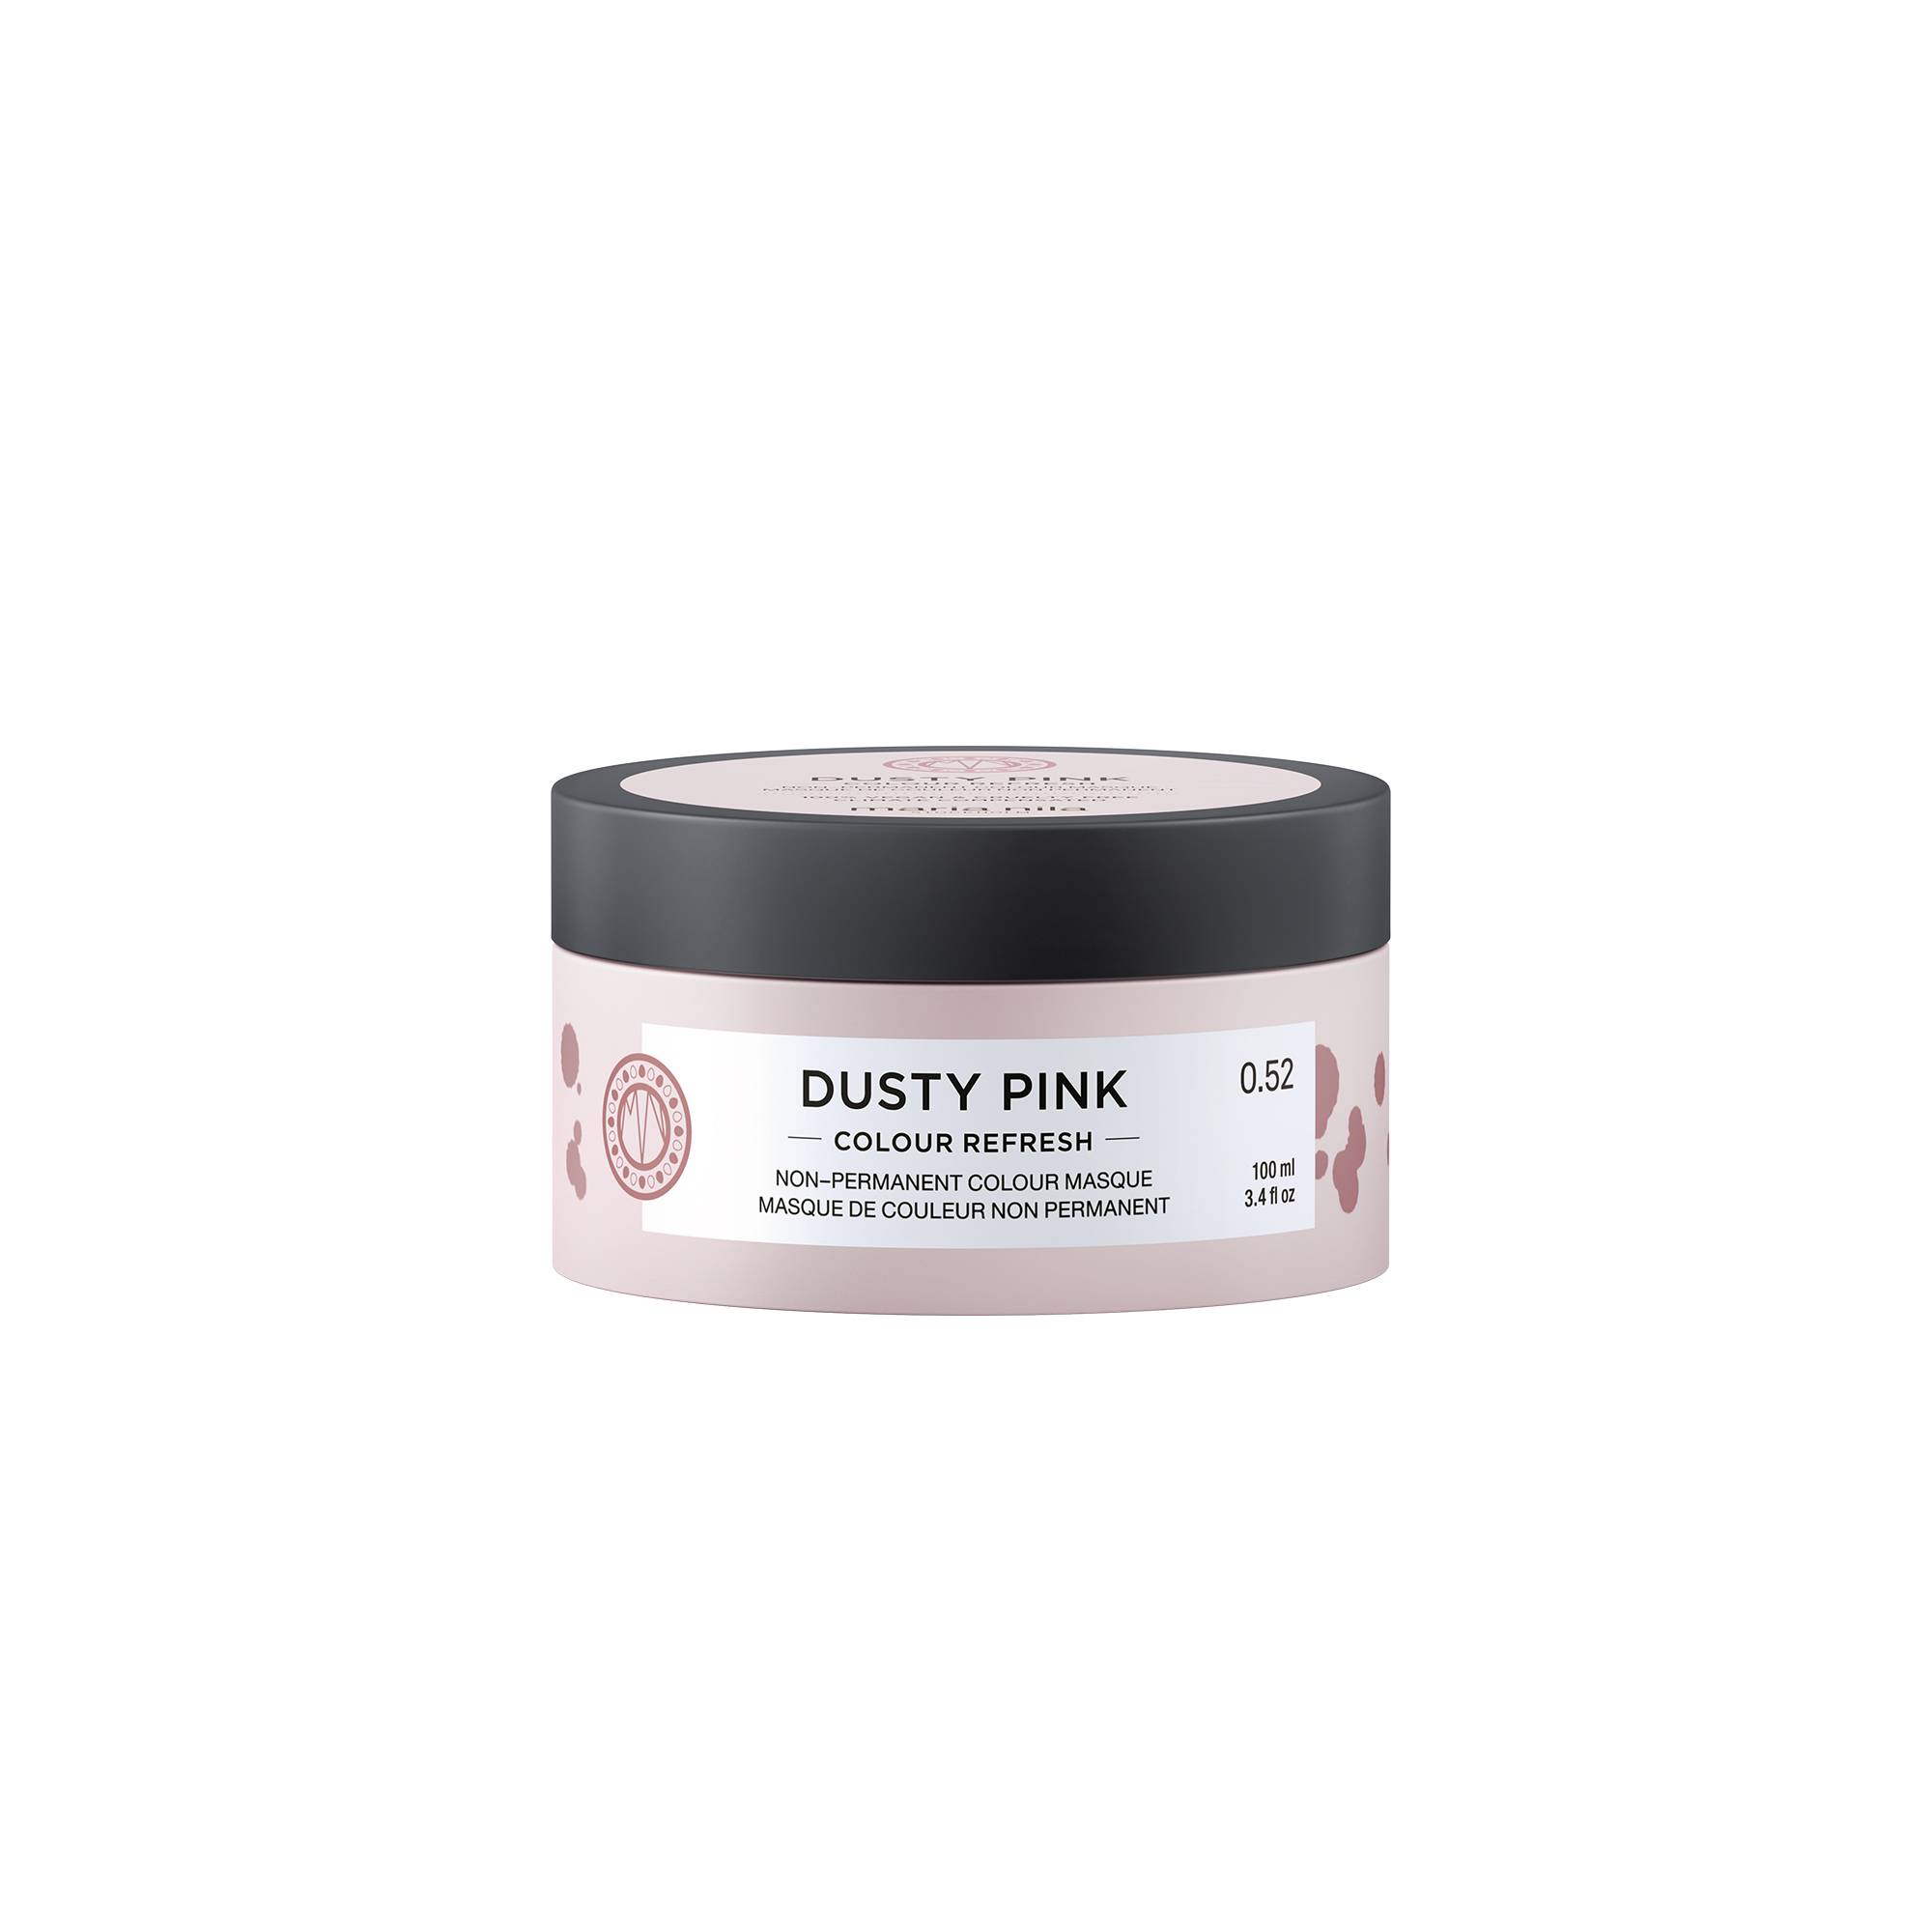 Masque repigmentant Colour refresh 0.52 Dusty pink de la marque Maria Nila Contenance 100ml - 1